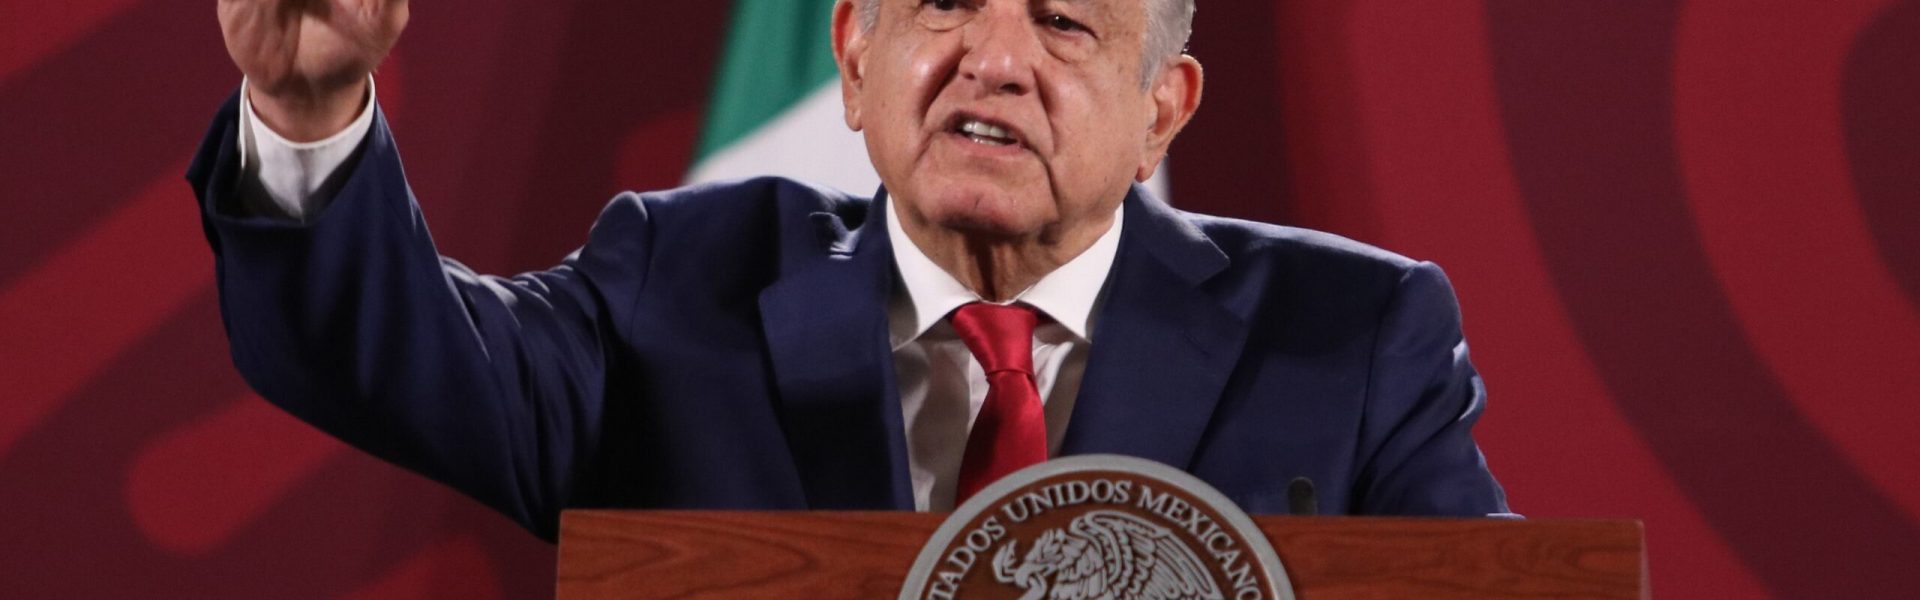 Con el Plan B, México dio un duro golpe al INE y a la democracia, dicta New York Times